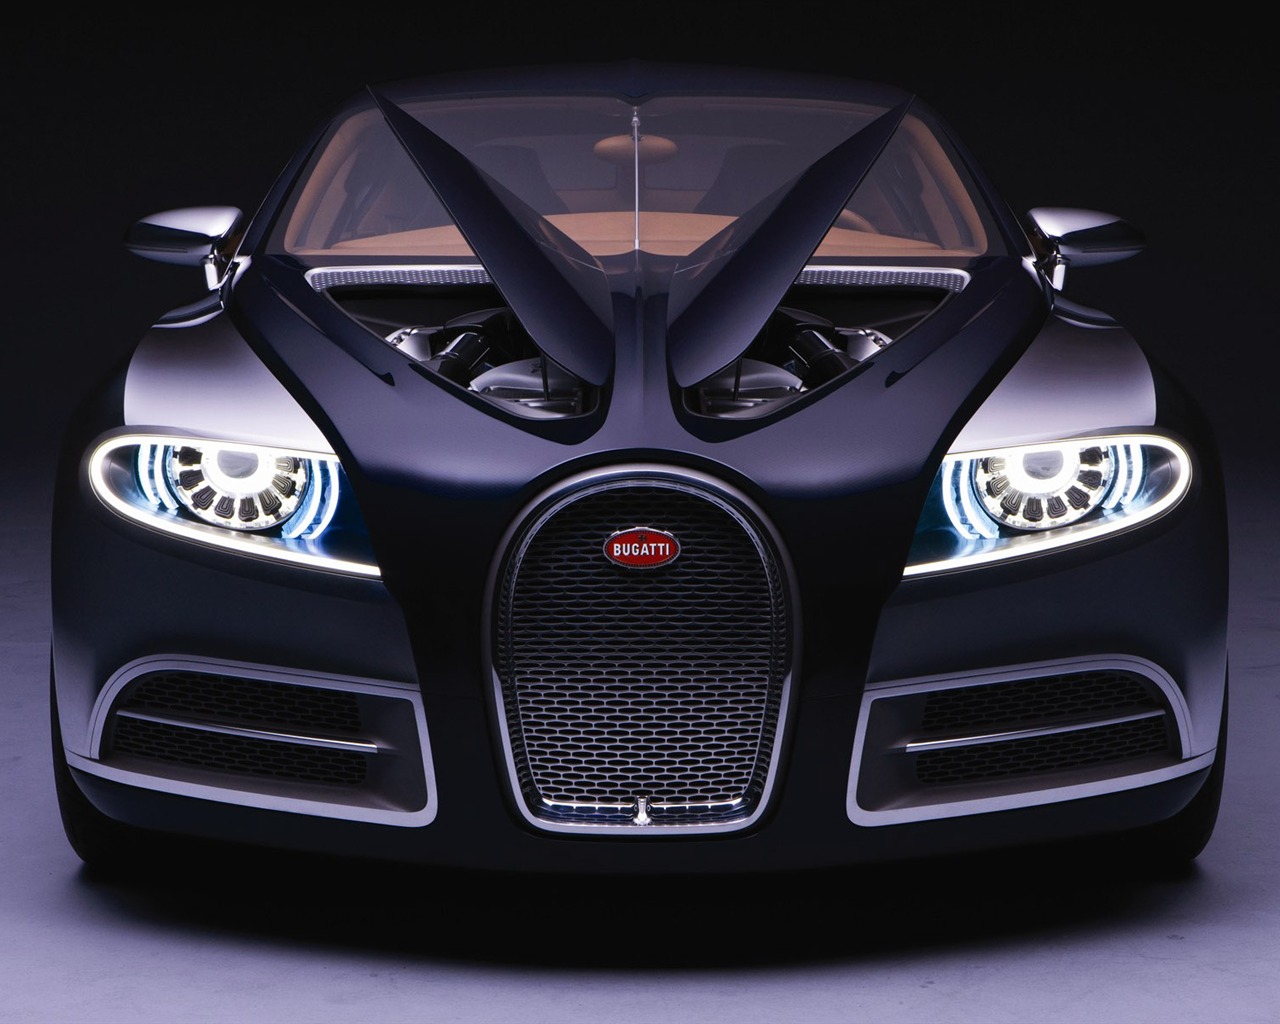 Bugatti Veyron Fondos de disco (2) #1 - 1280x1024